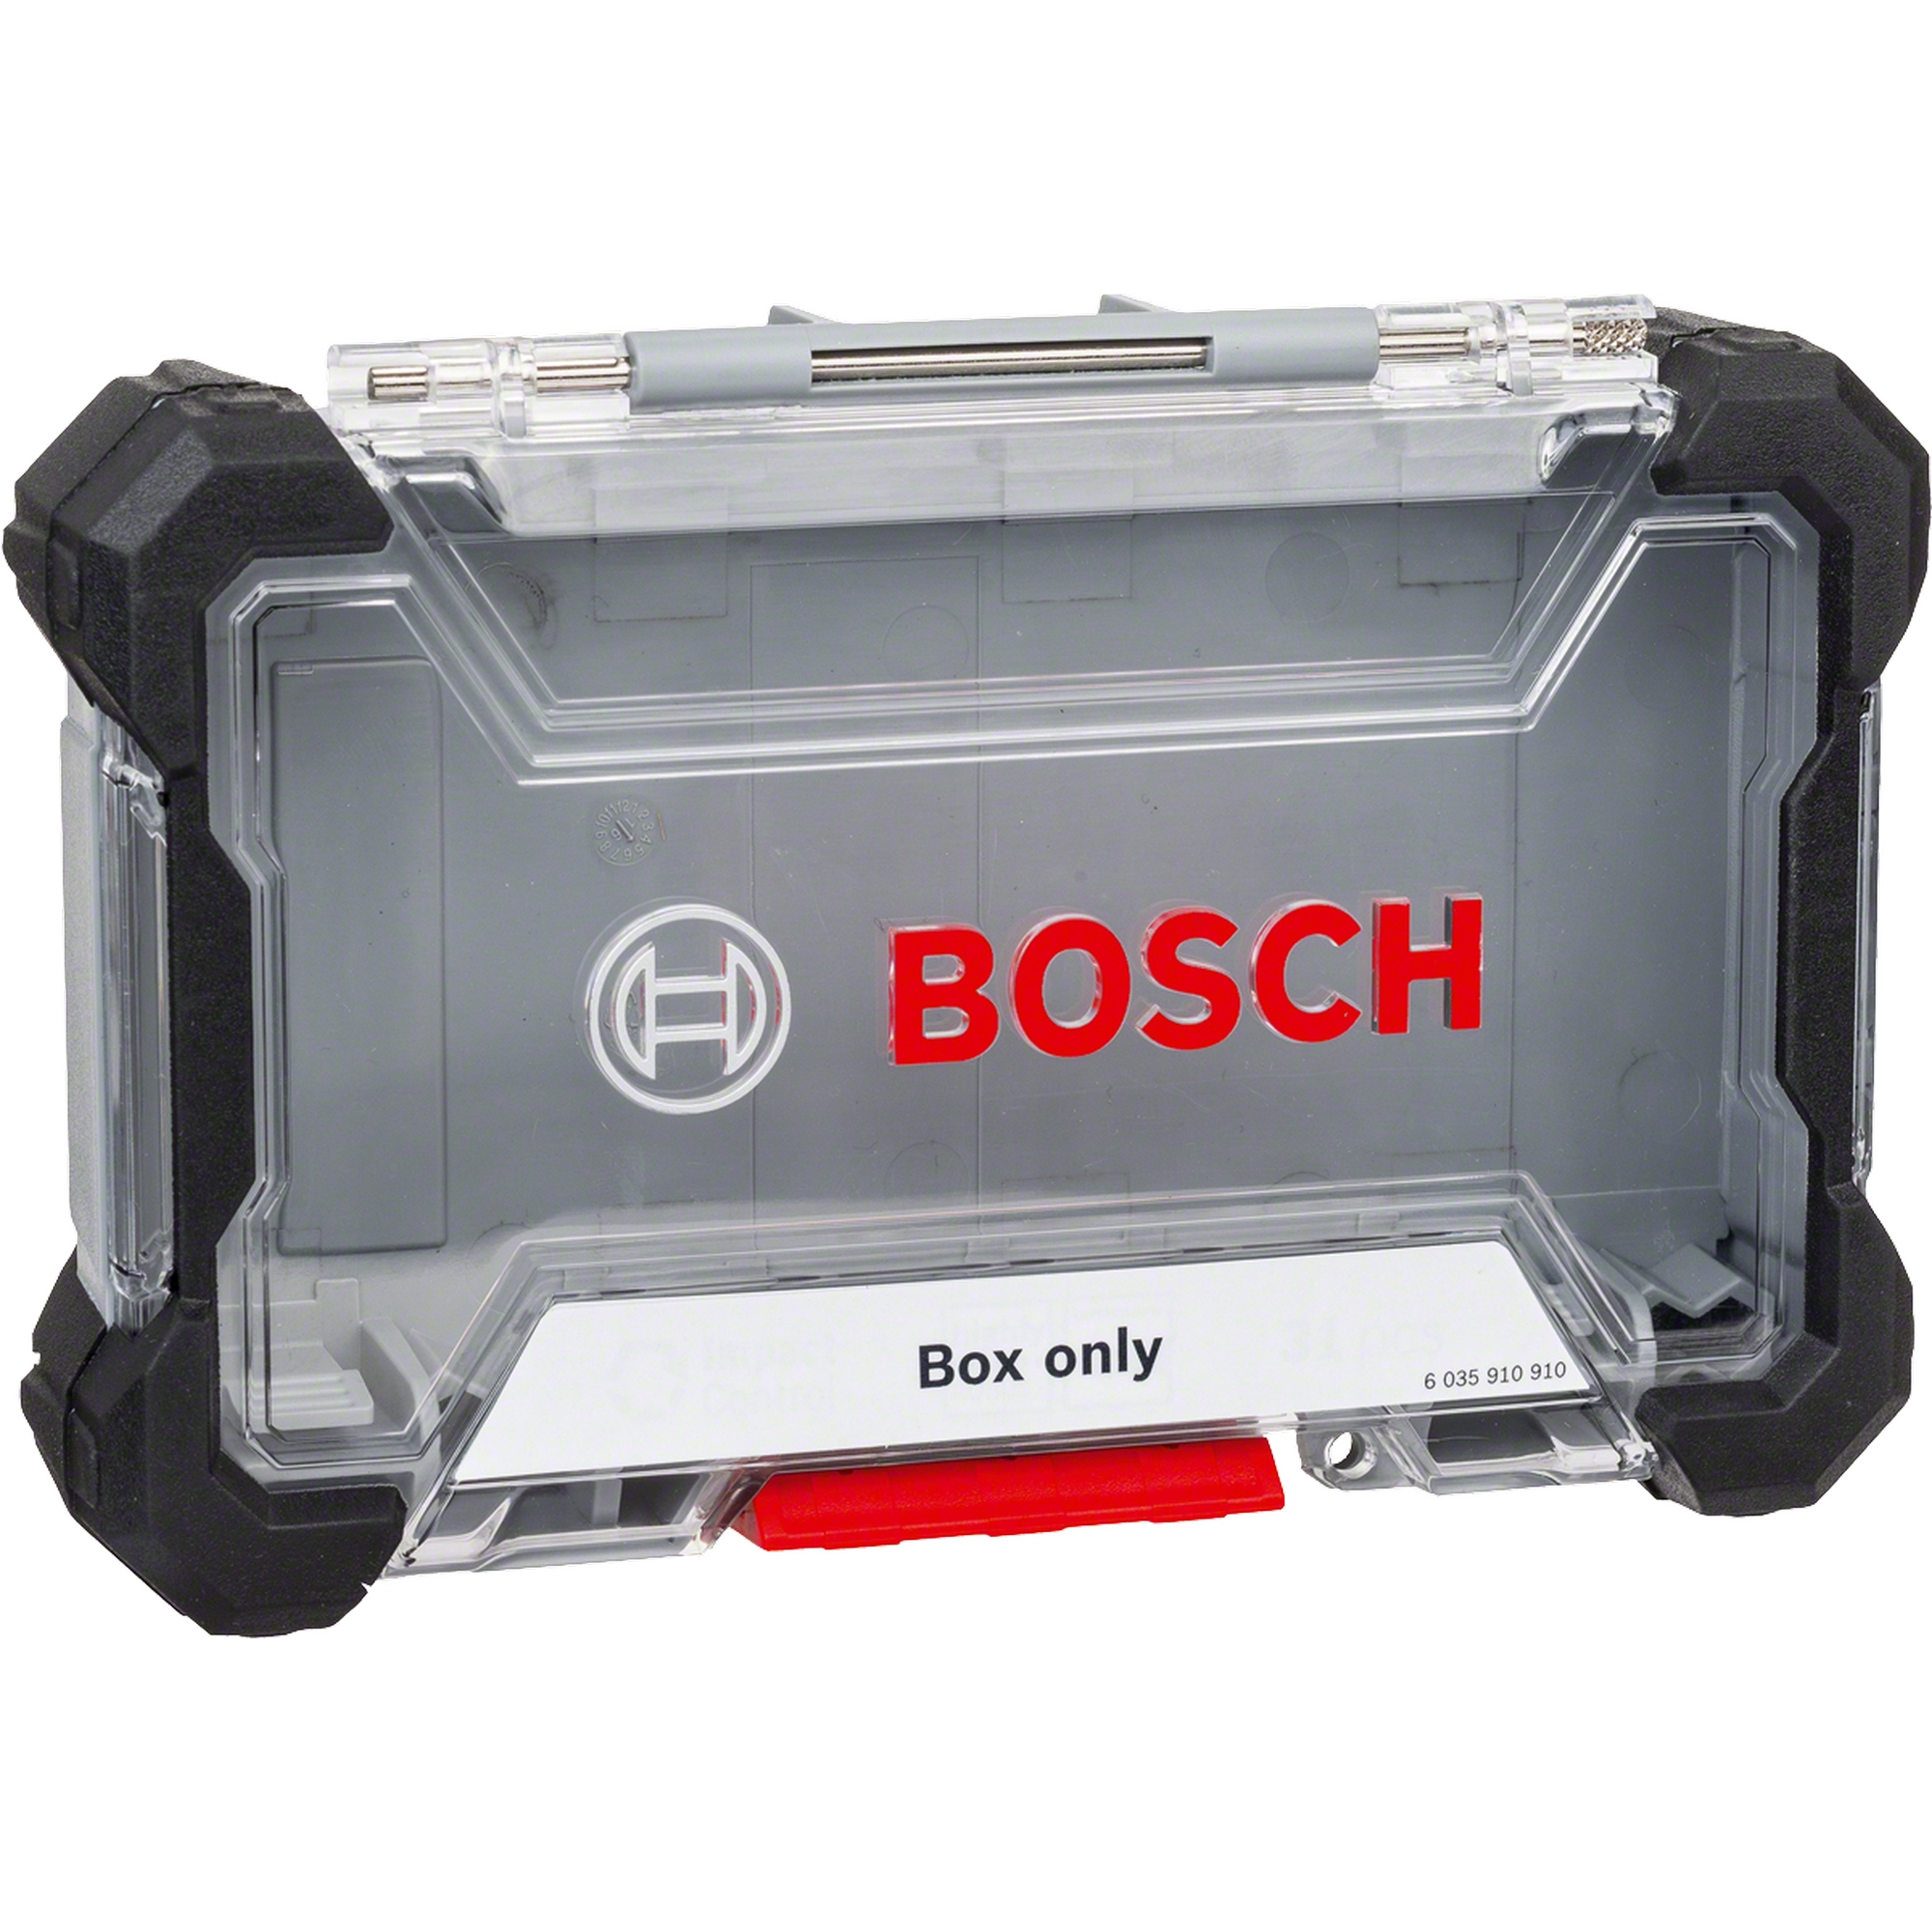 Bosch Aufbewahrungsbox ‚Pick and Click‘ Größe M 19,8 x 10,8 x 4,4 cm